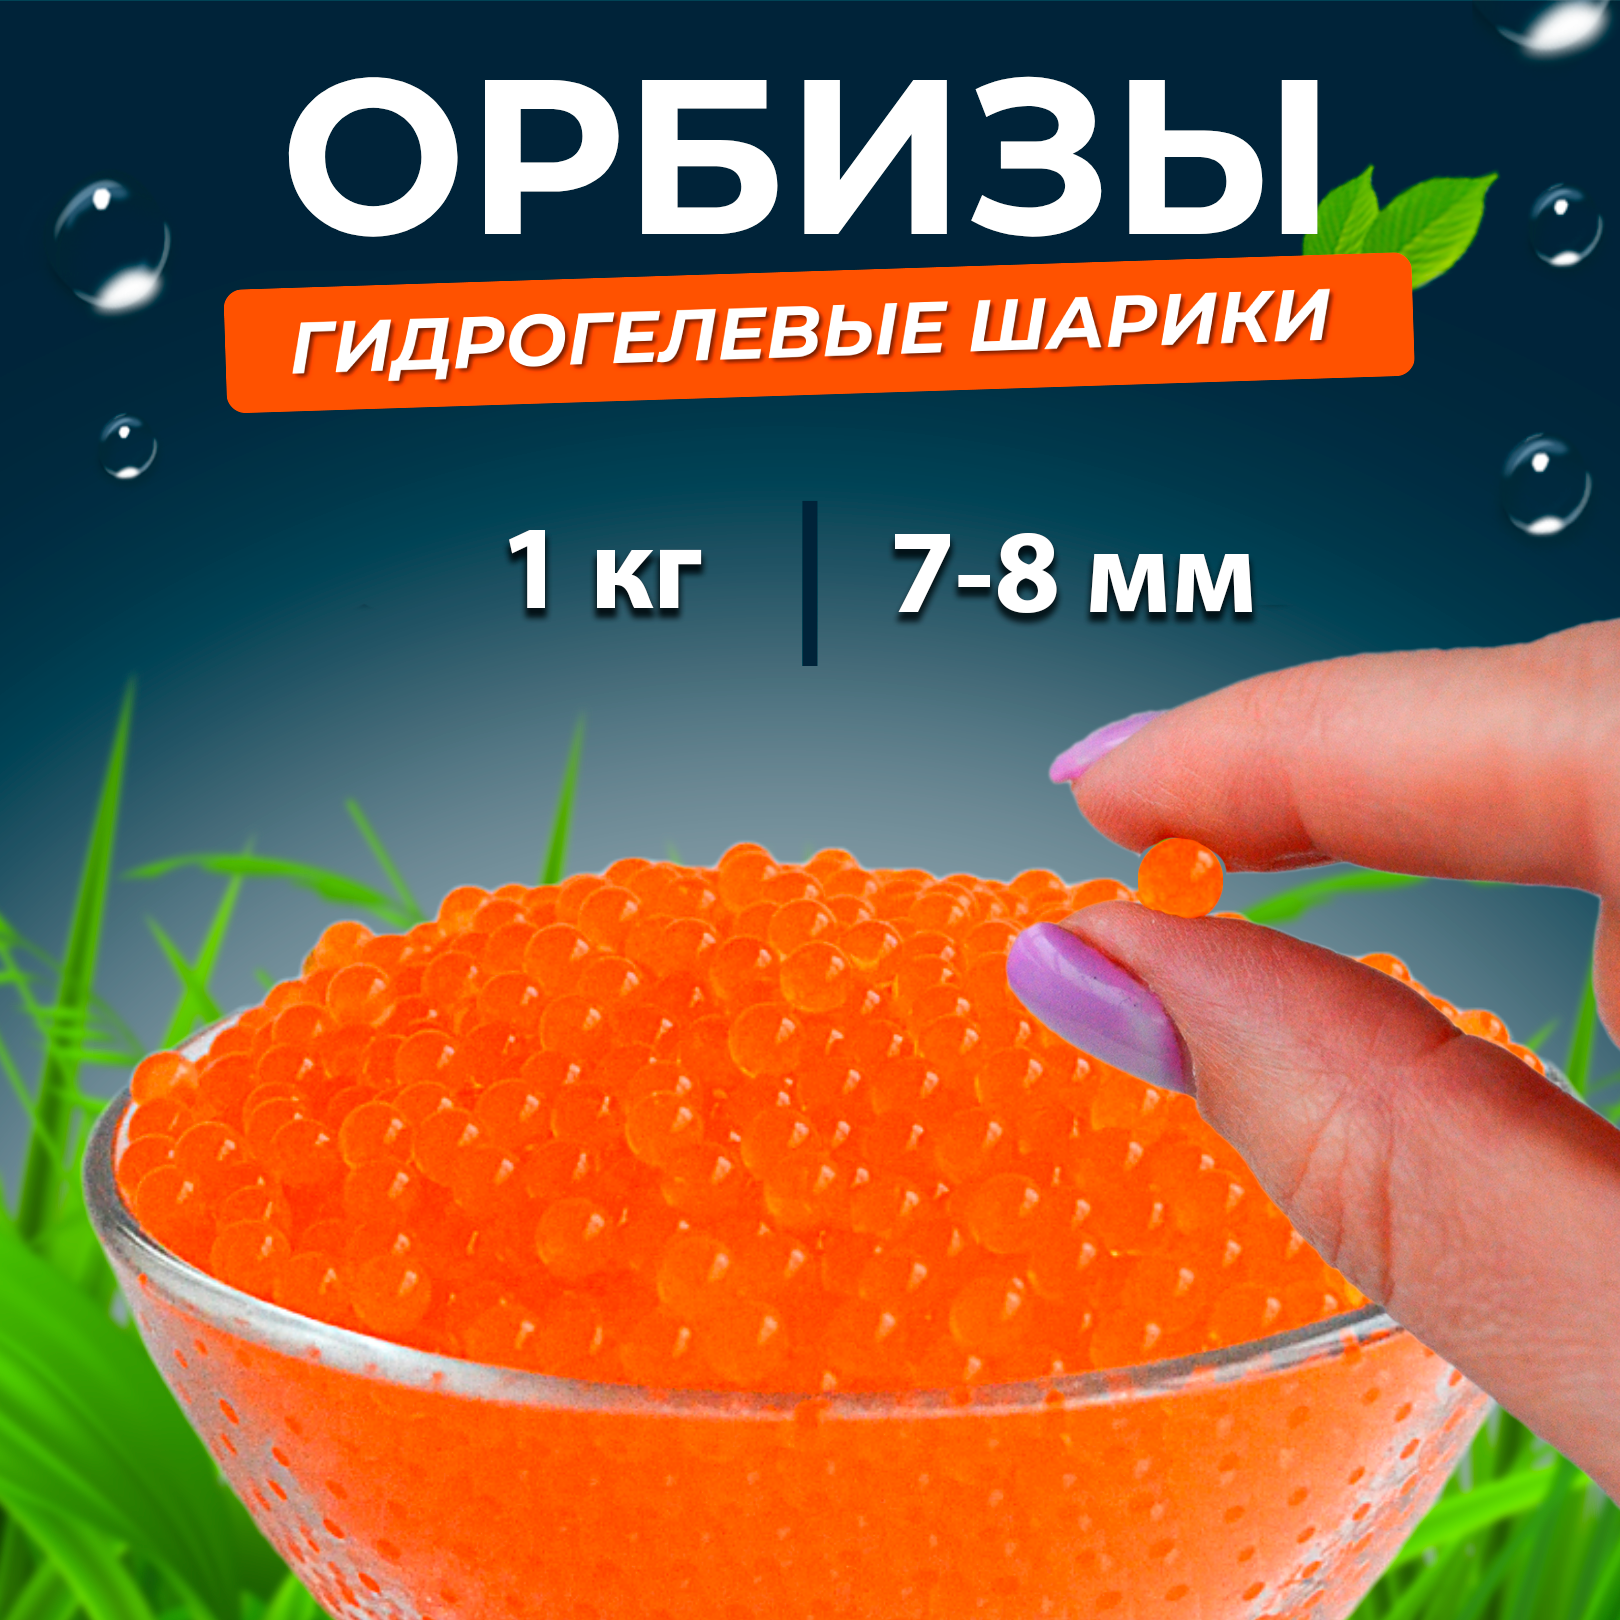 Орбиз-шары (водяные шарики, гидрогель, аквагрунт)7- 8 мм, 1 кг, оранжевые